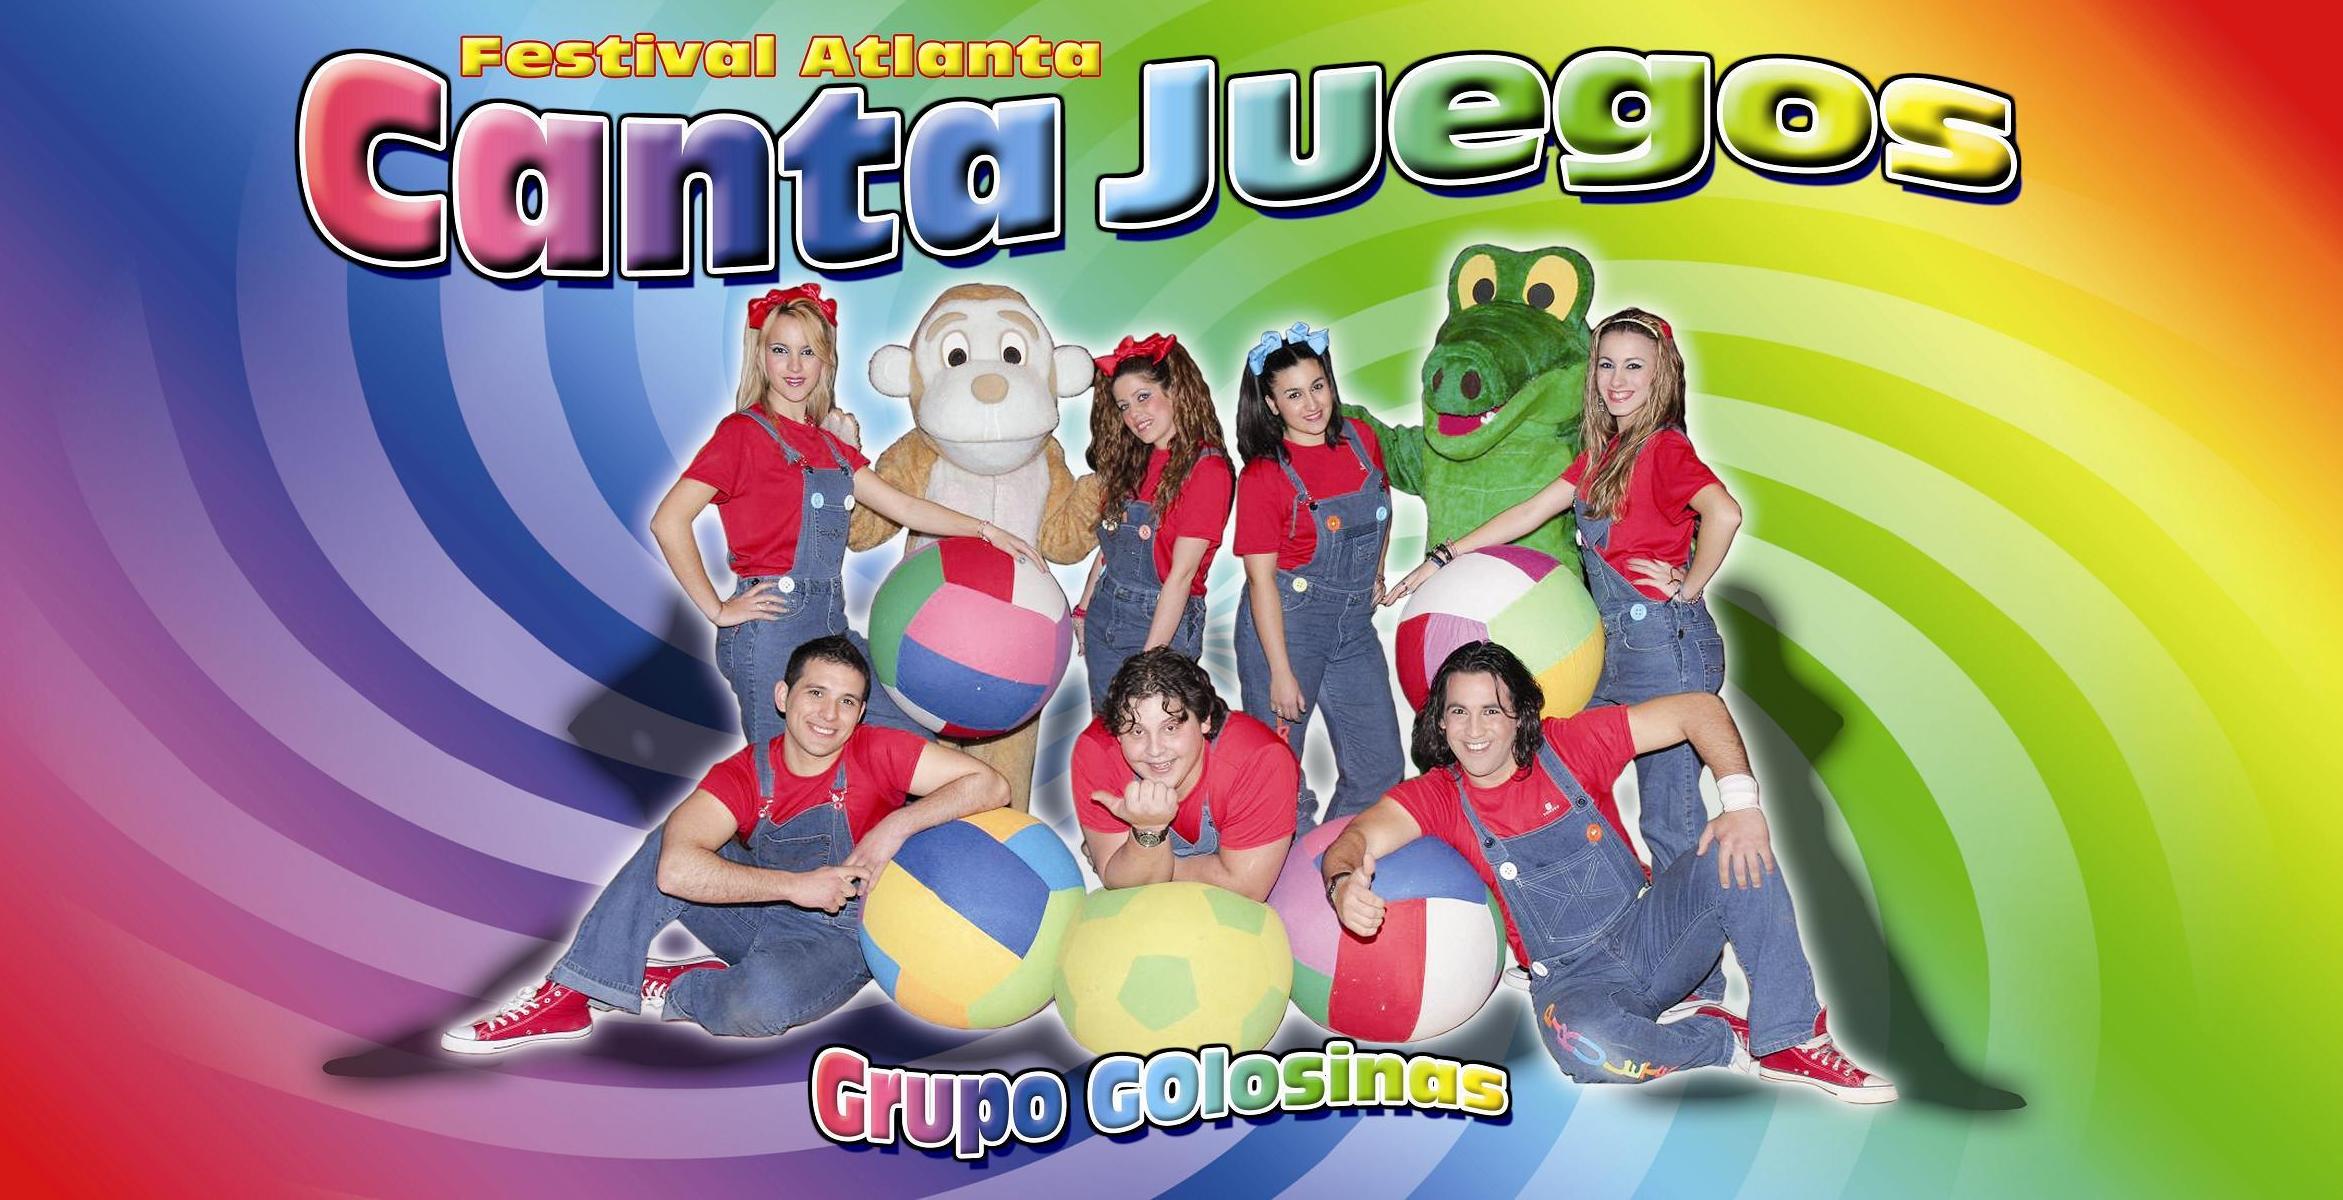 Canta Juegos – Grupo Golosina en el Colegio Litterator (Aranjuez)